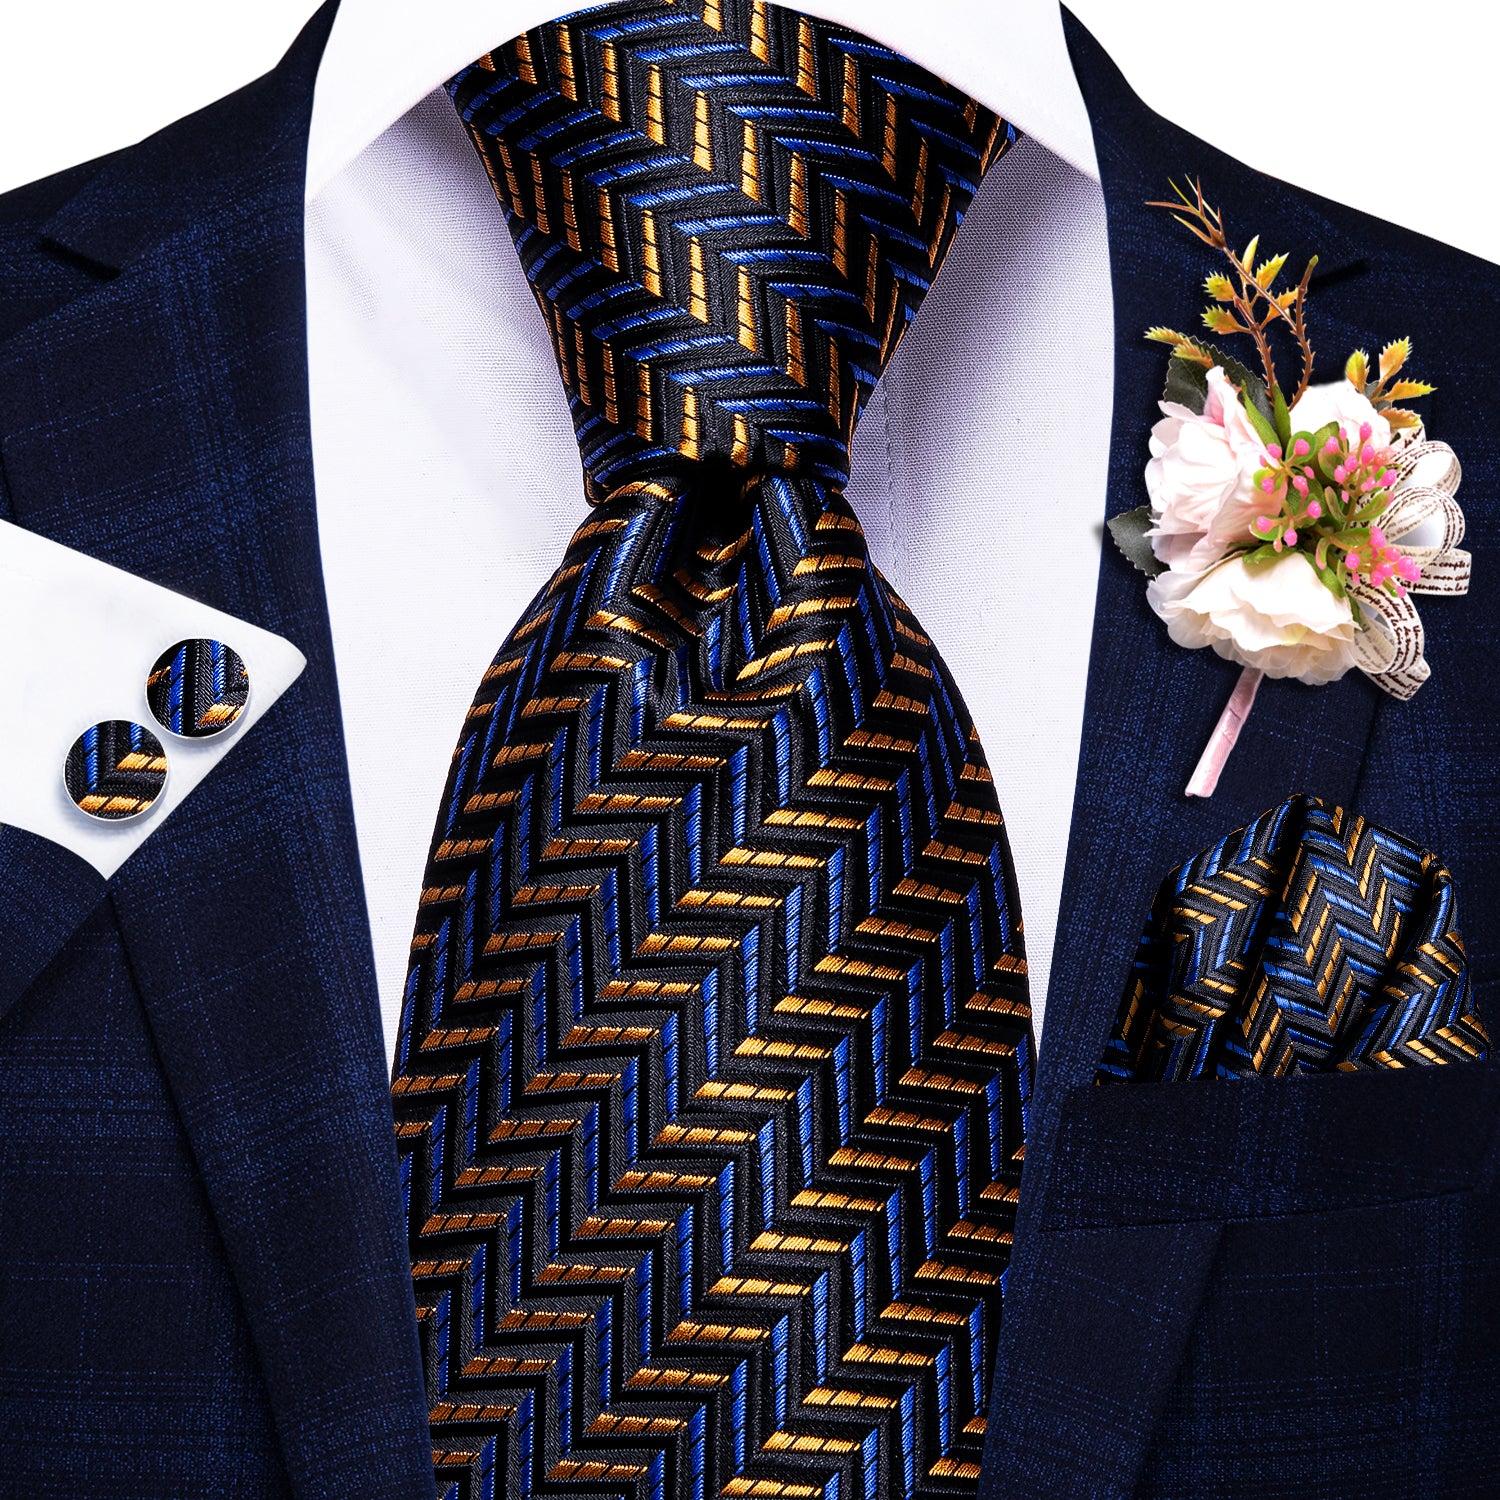 Black Golden Striped Tie Handkerchief Cufflinks Set with Wedding Brooch